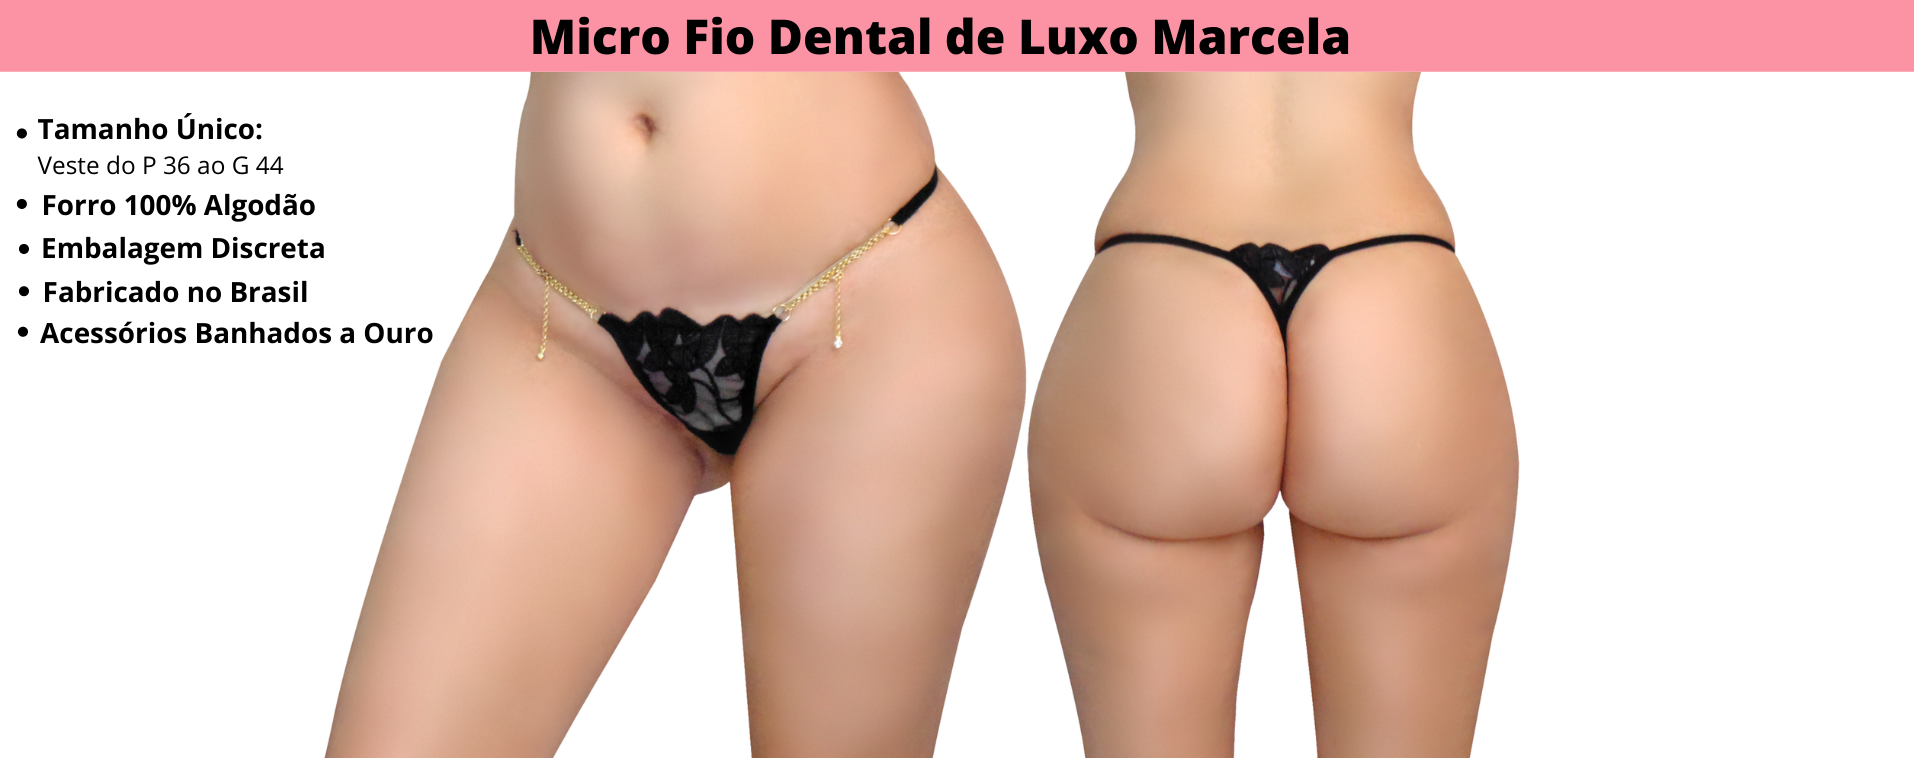 Características Micro Calcinha Fio Dental de Luxo Marcela